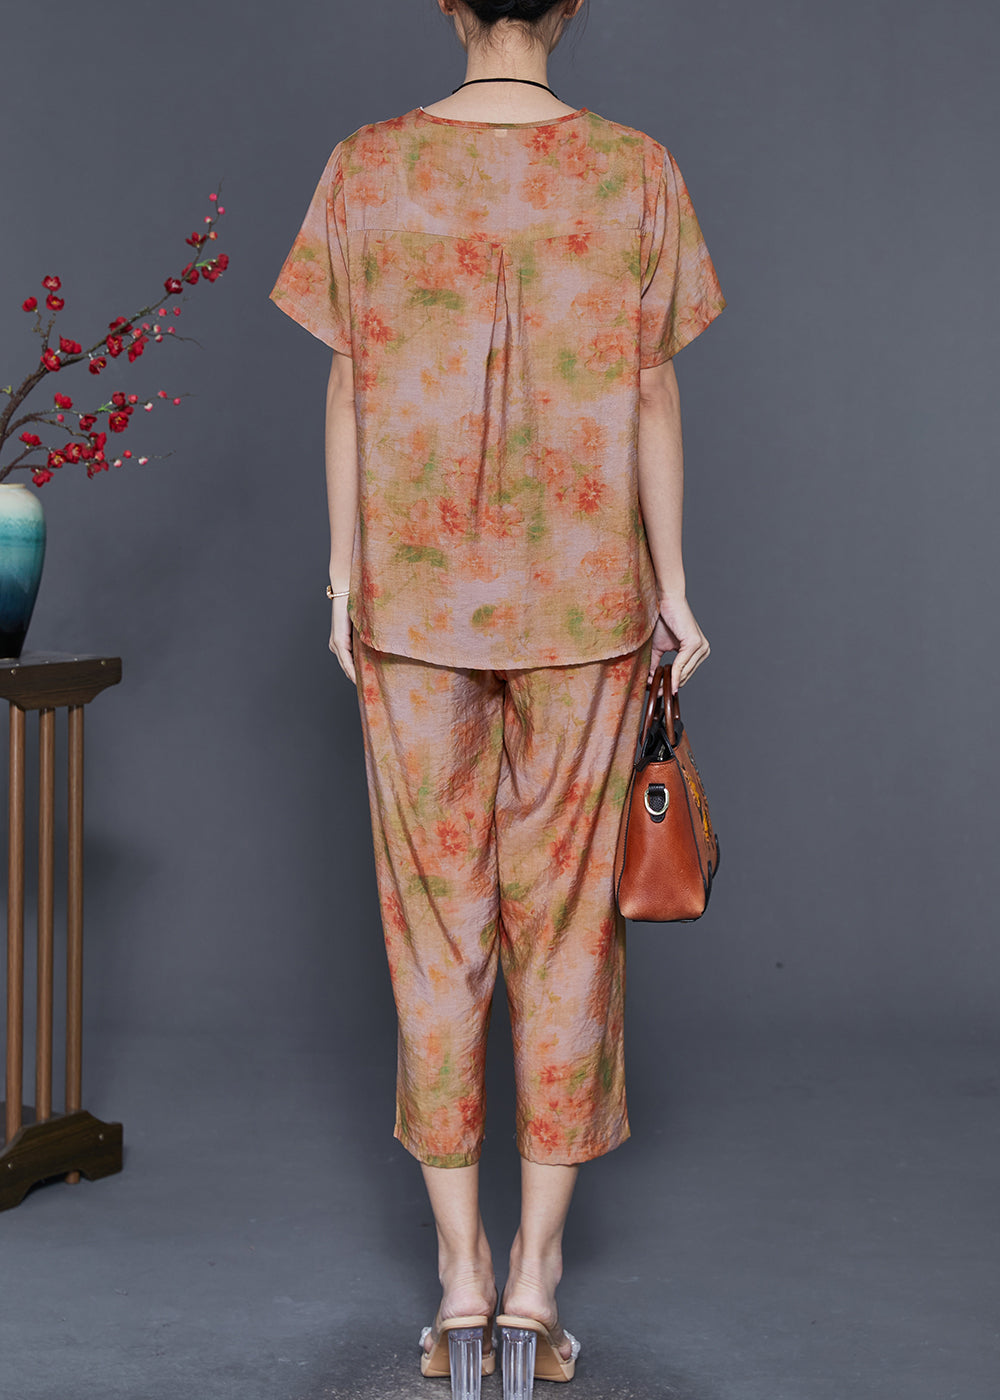 Italian Orange Oversized Tie Dye Linen Two Piece Set Outfits Summer